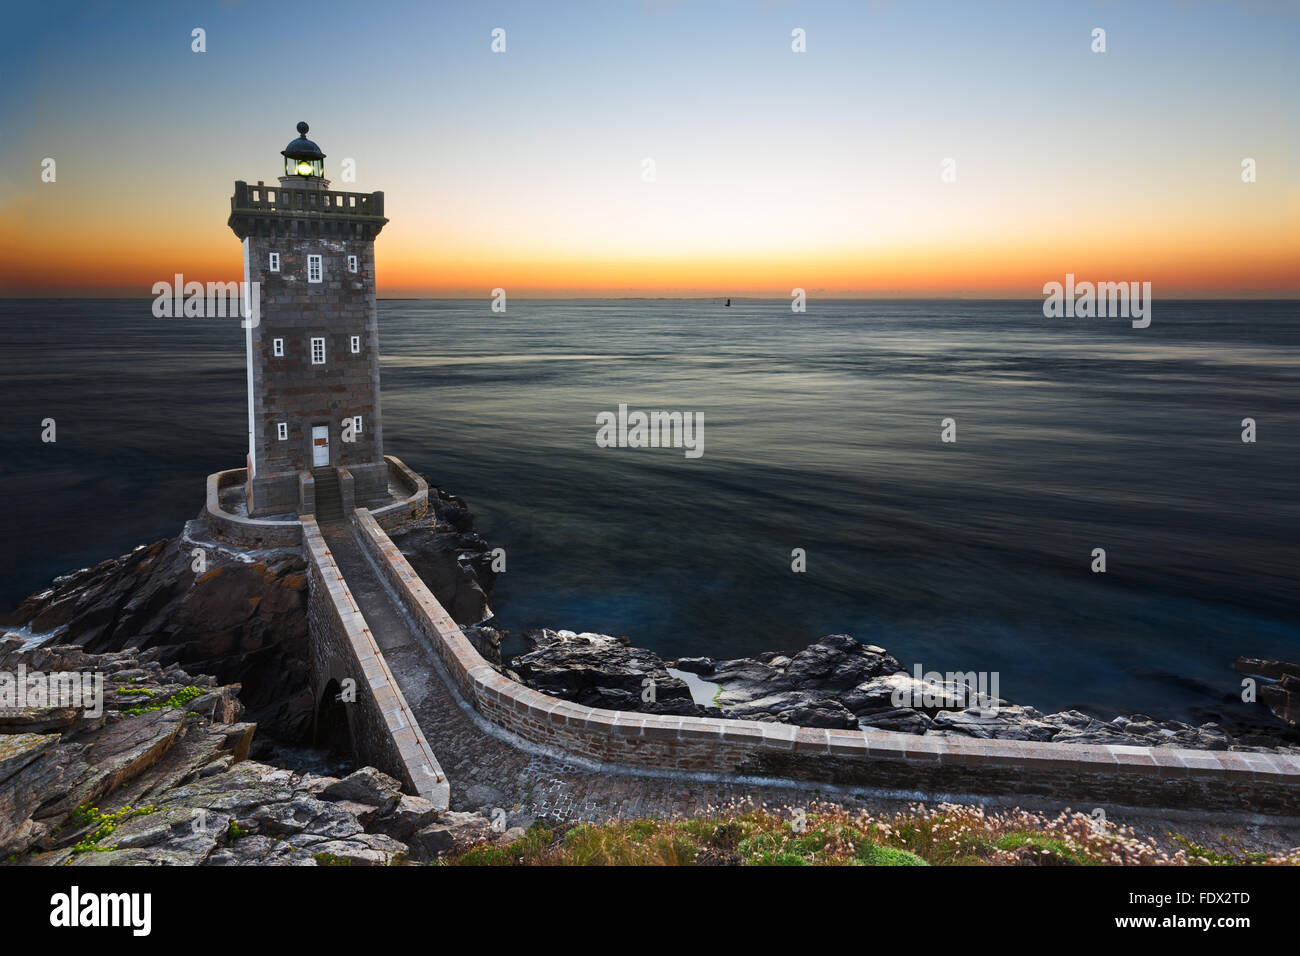 Le phare de Kermorvan après le coucher du soleil, Bretagne, France Banque D'Images